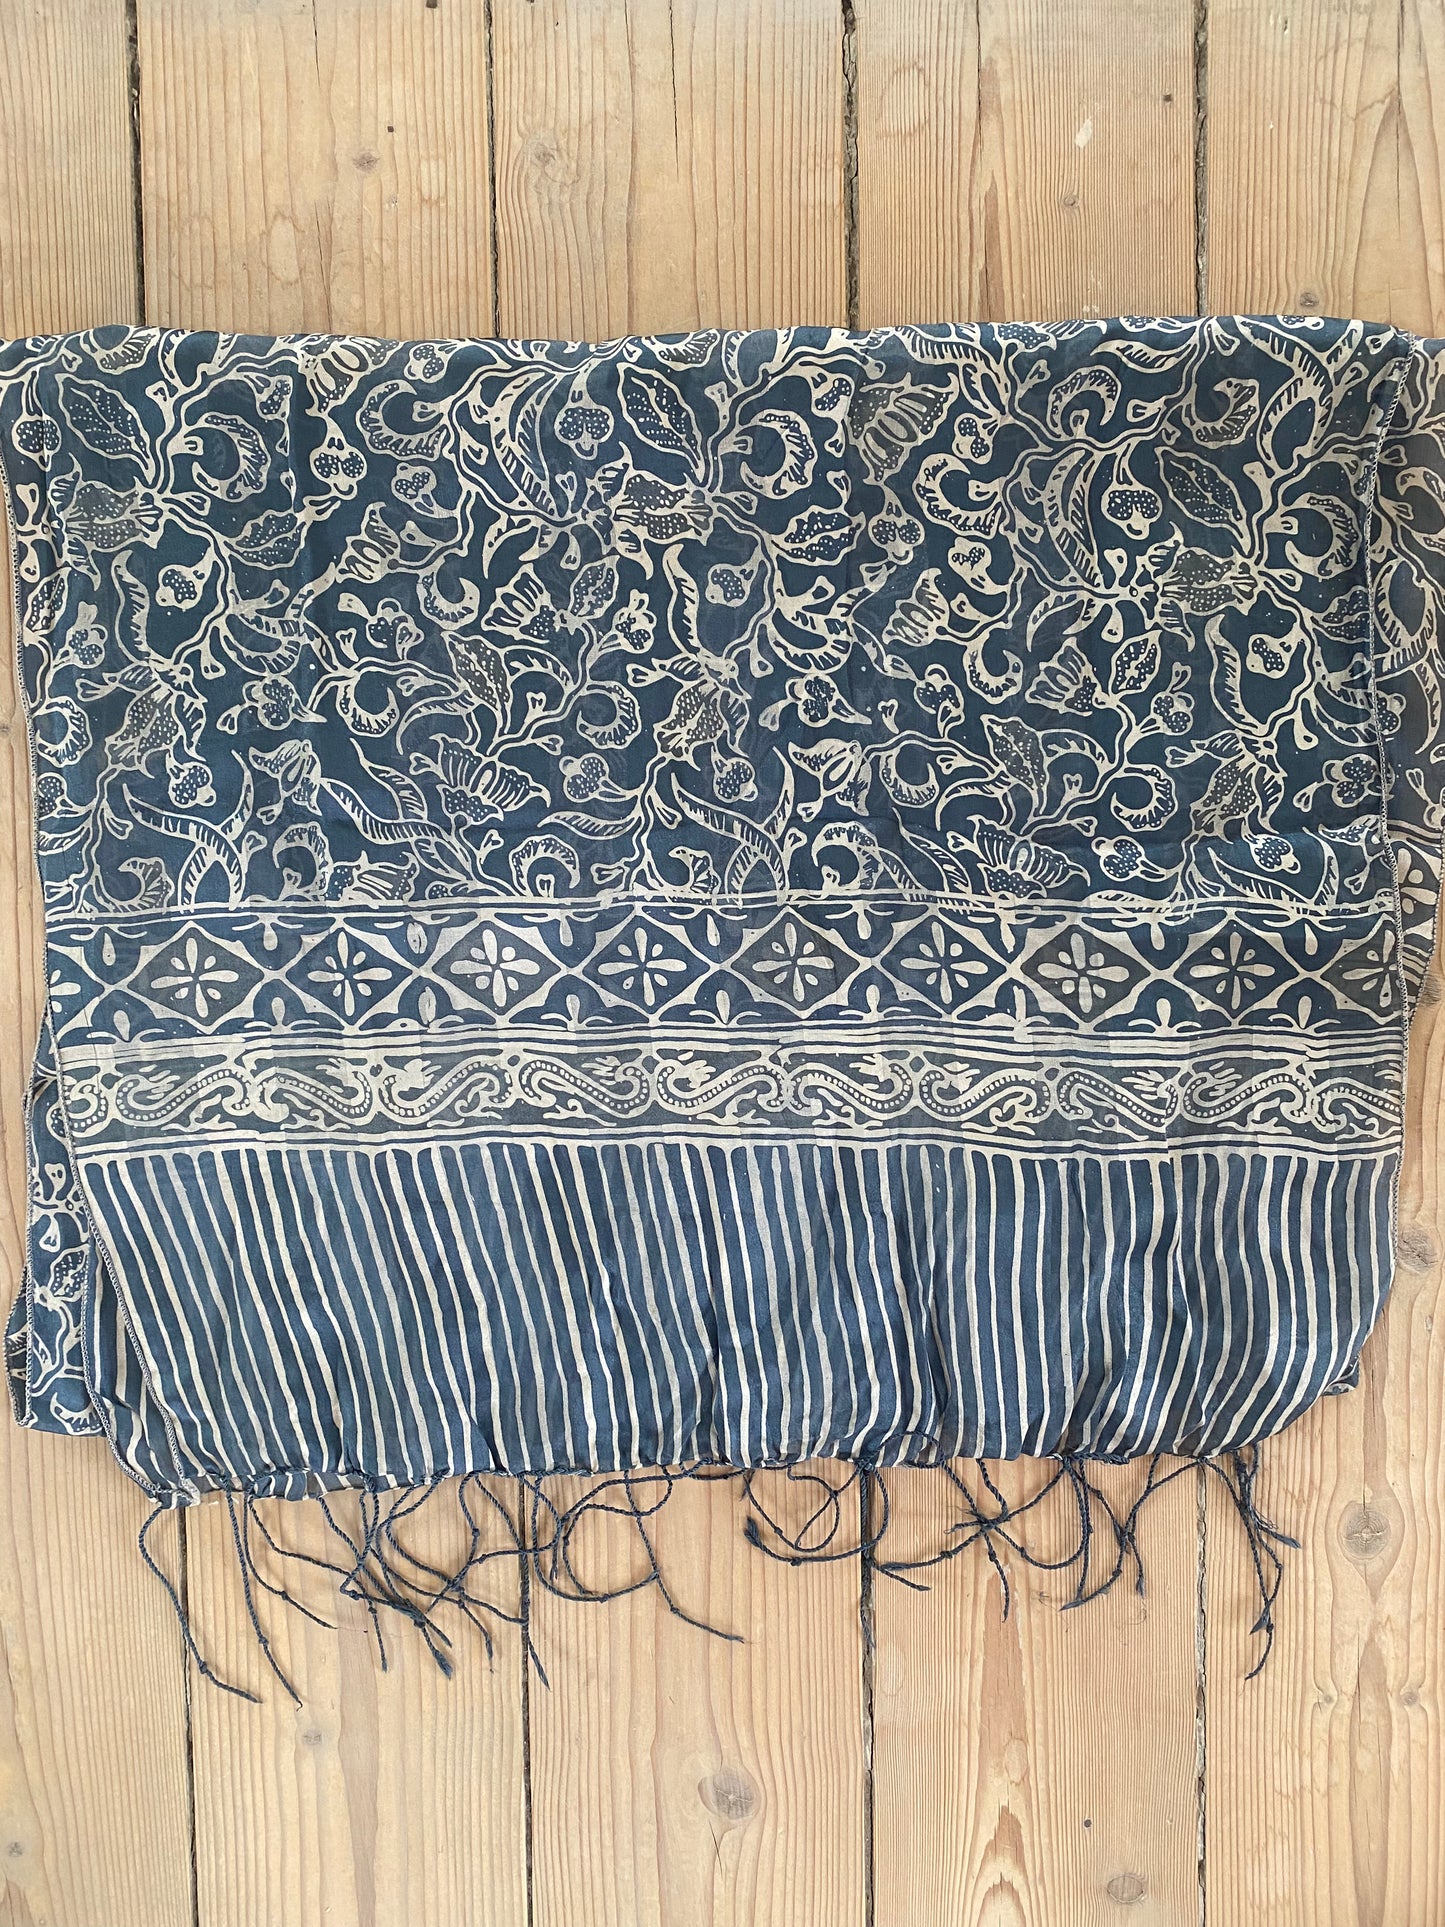 100% Silk scarf grey/blue